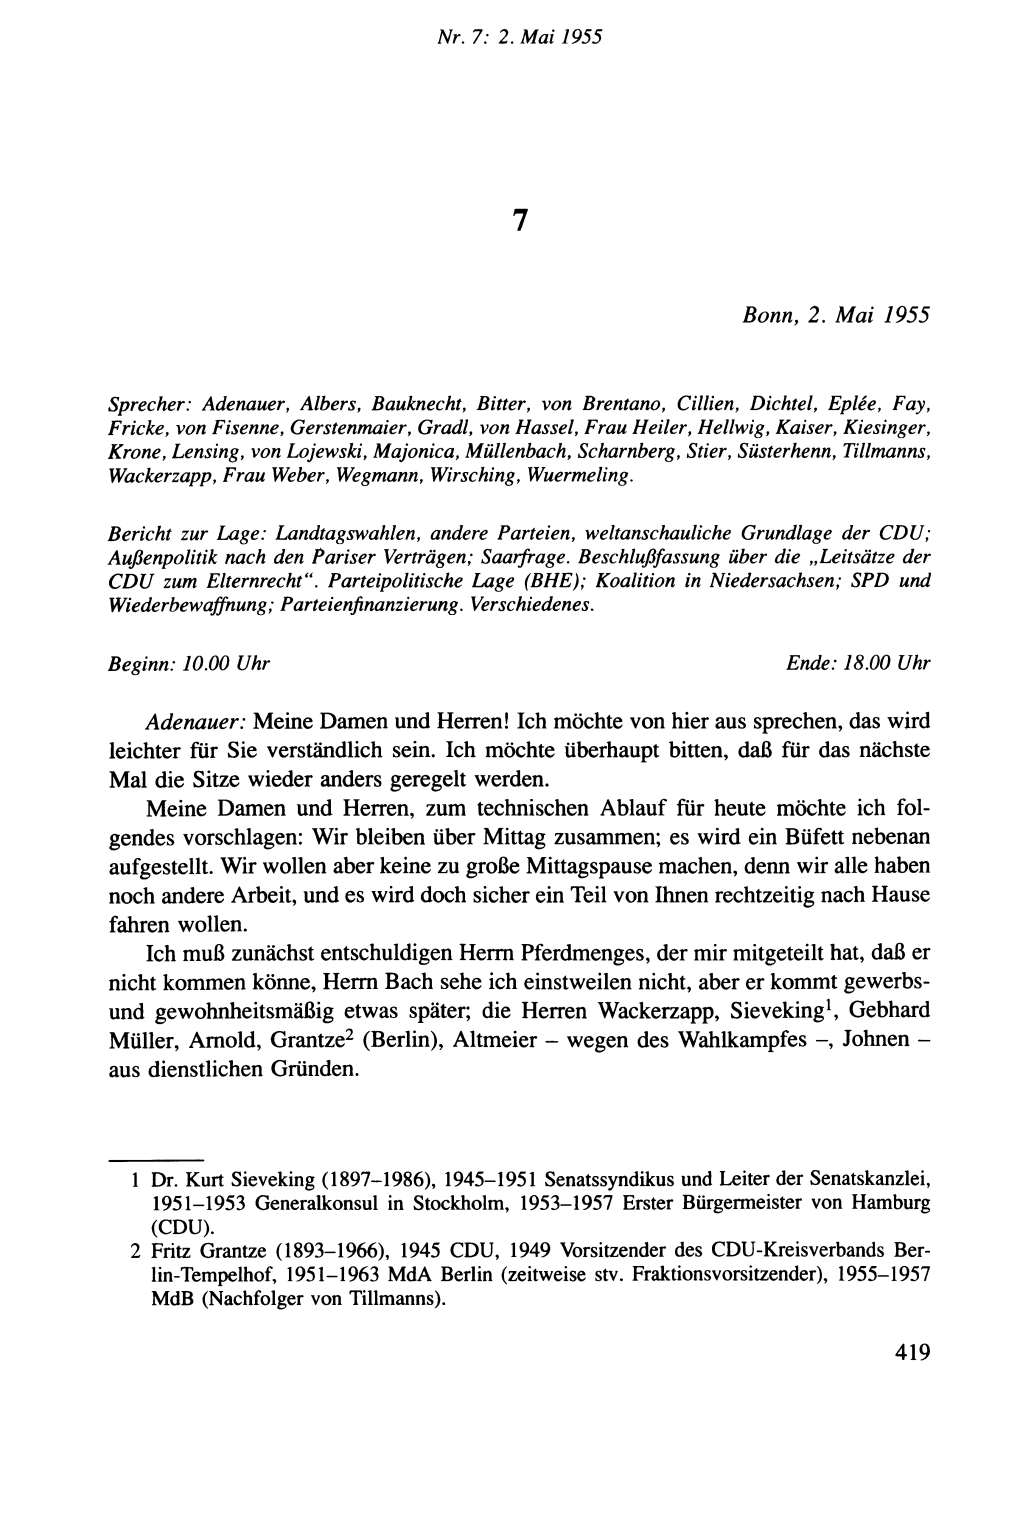 Die Protokolle Des CDU-Bundesvorstands 1953-1957